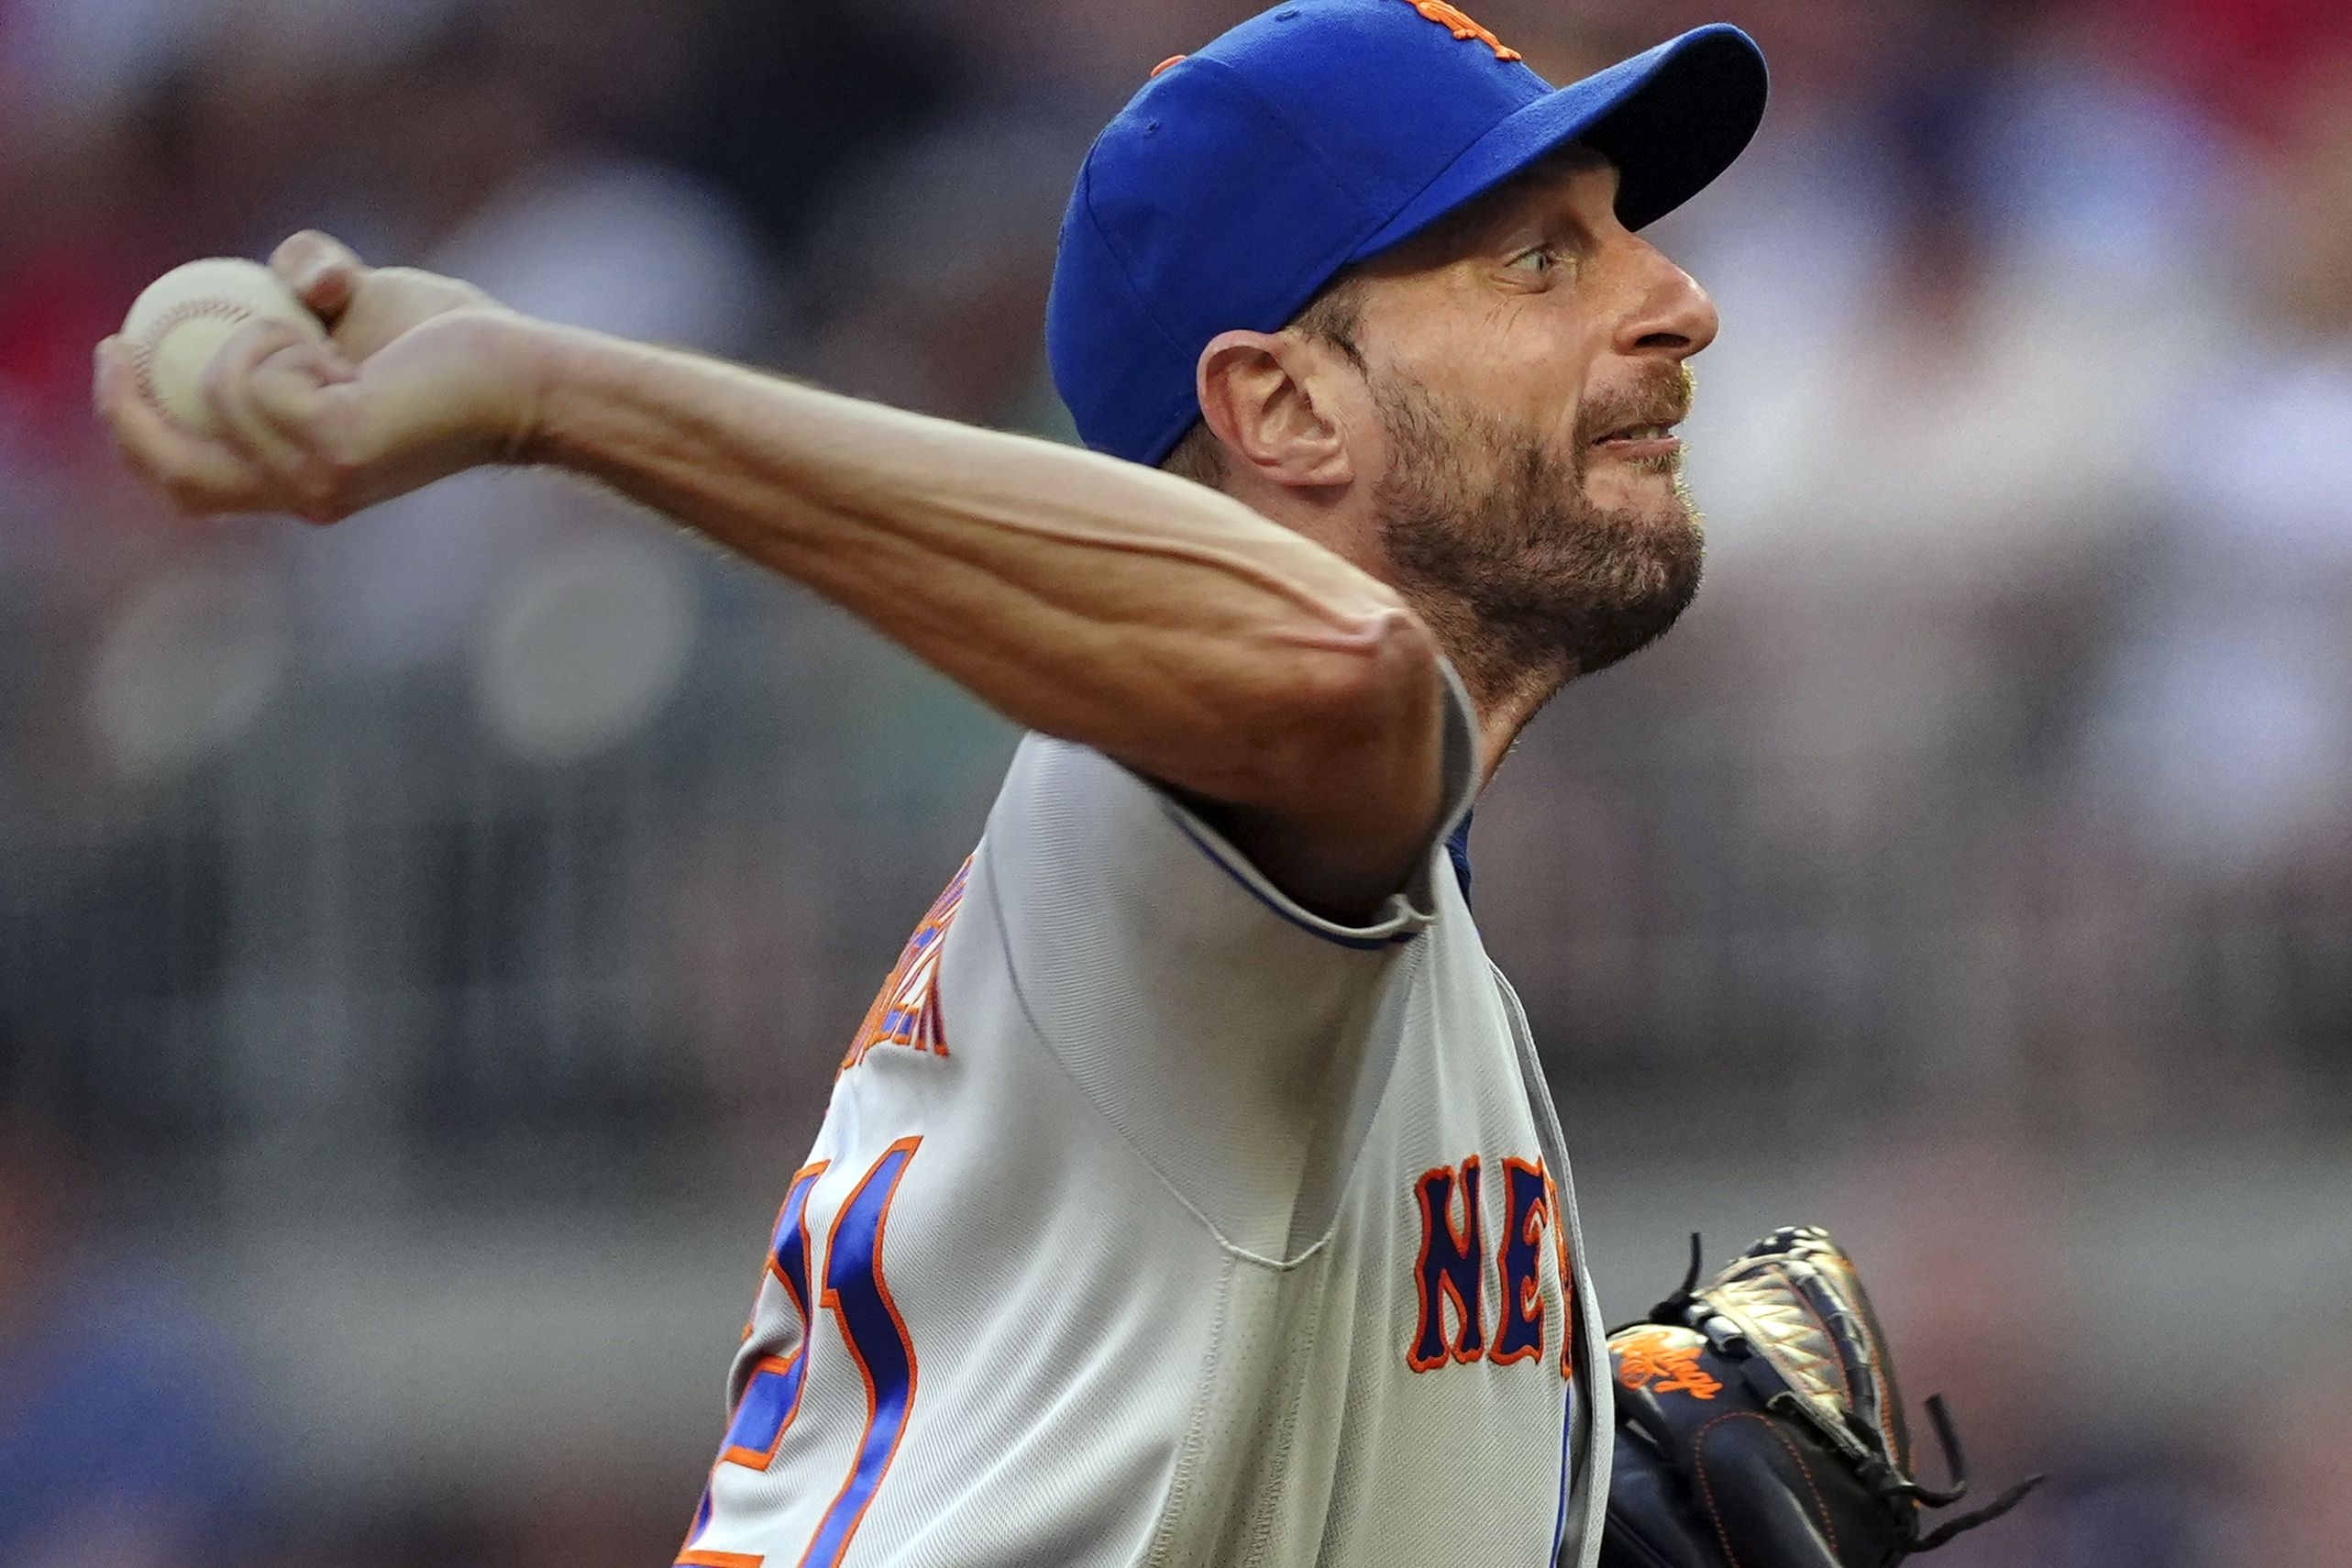 Mets star pitcher Max Scherzer to make rehab start in Syracuse Wednesday